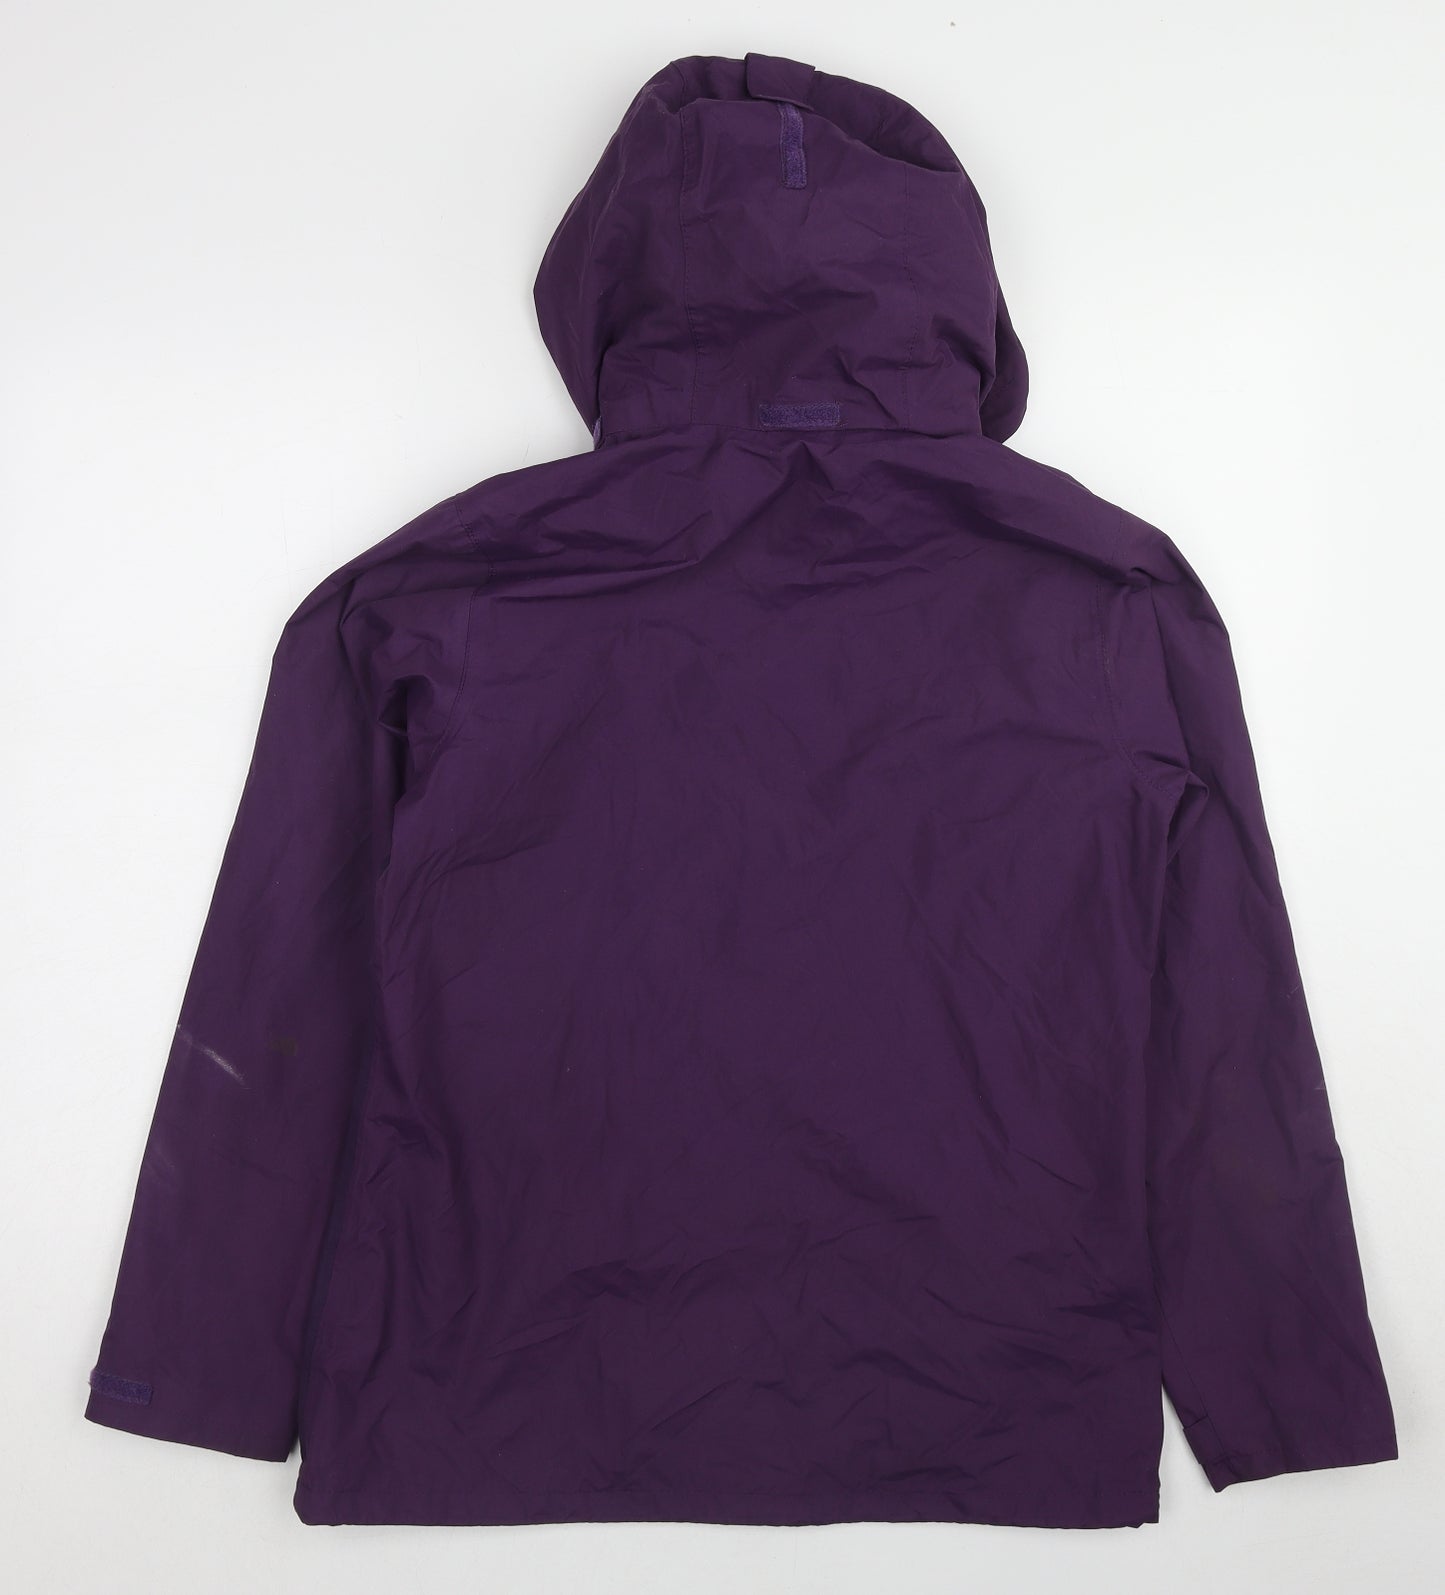 Regatta Womens Purple Windbreaker Jacket Size 12 Zip